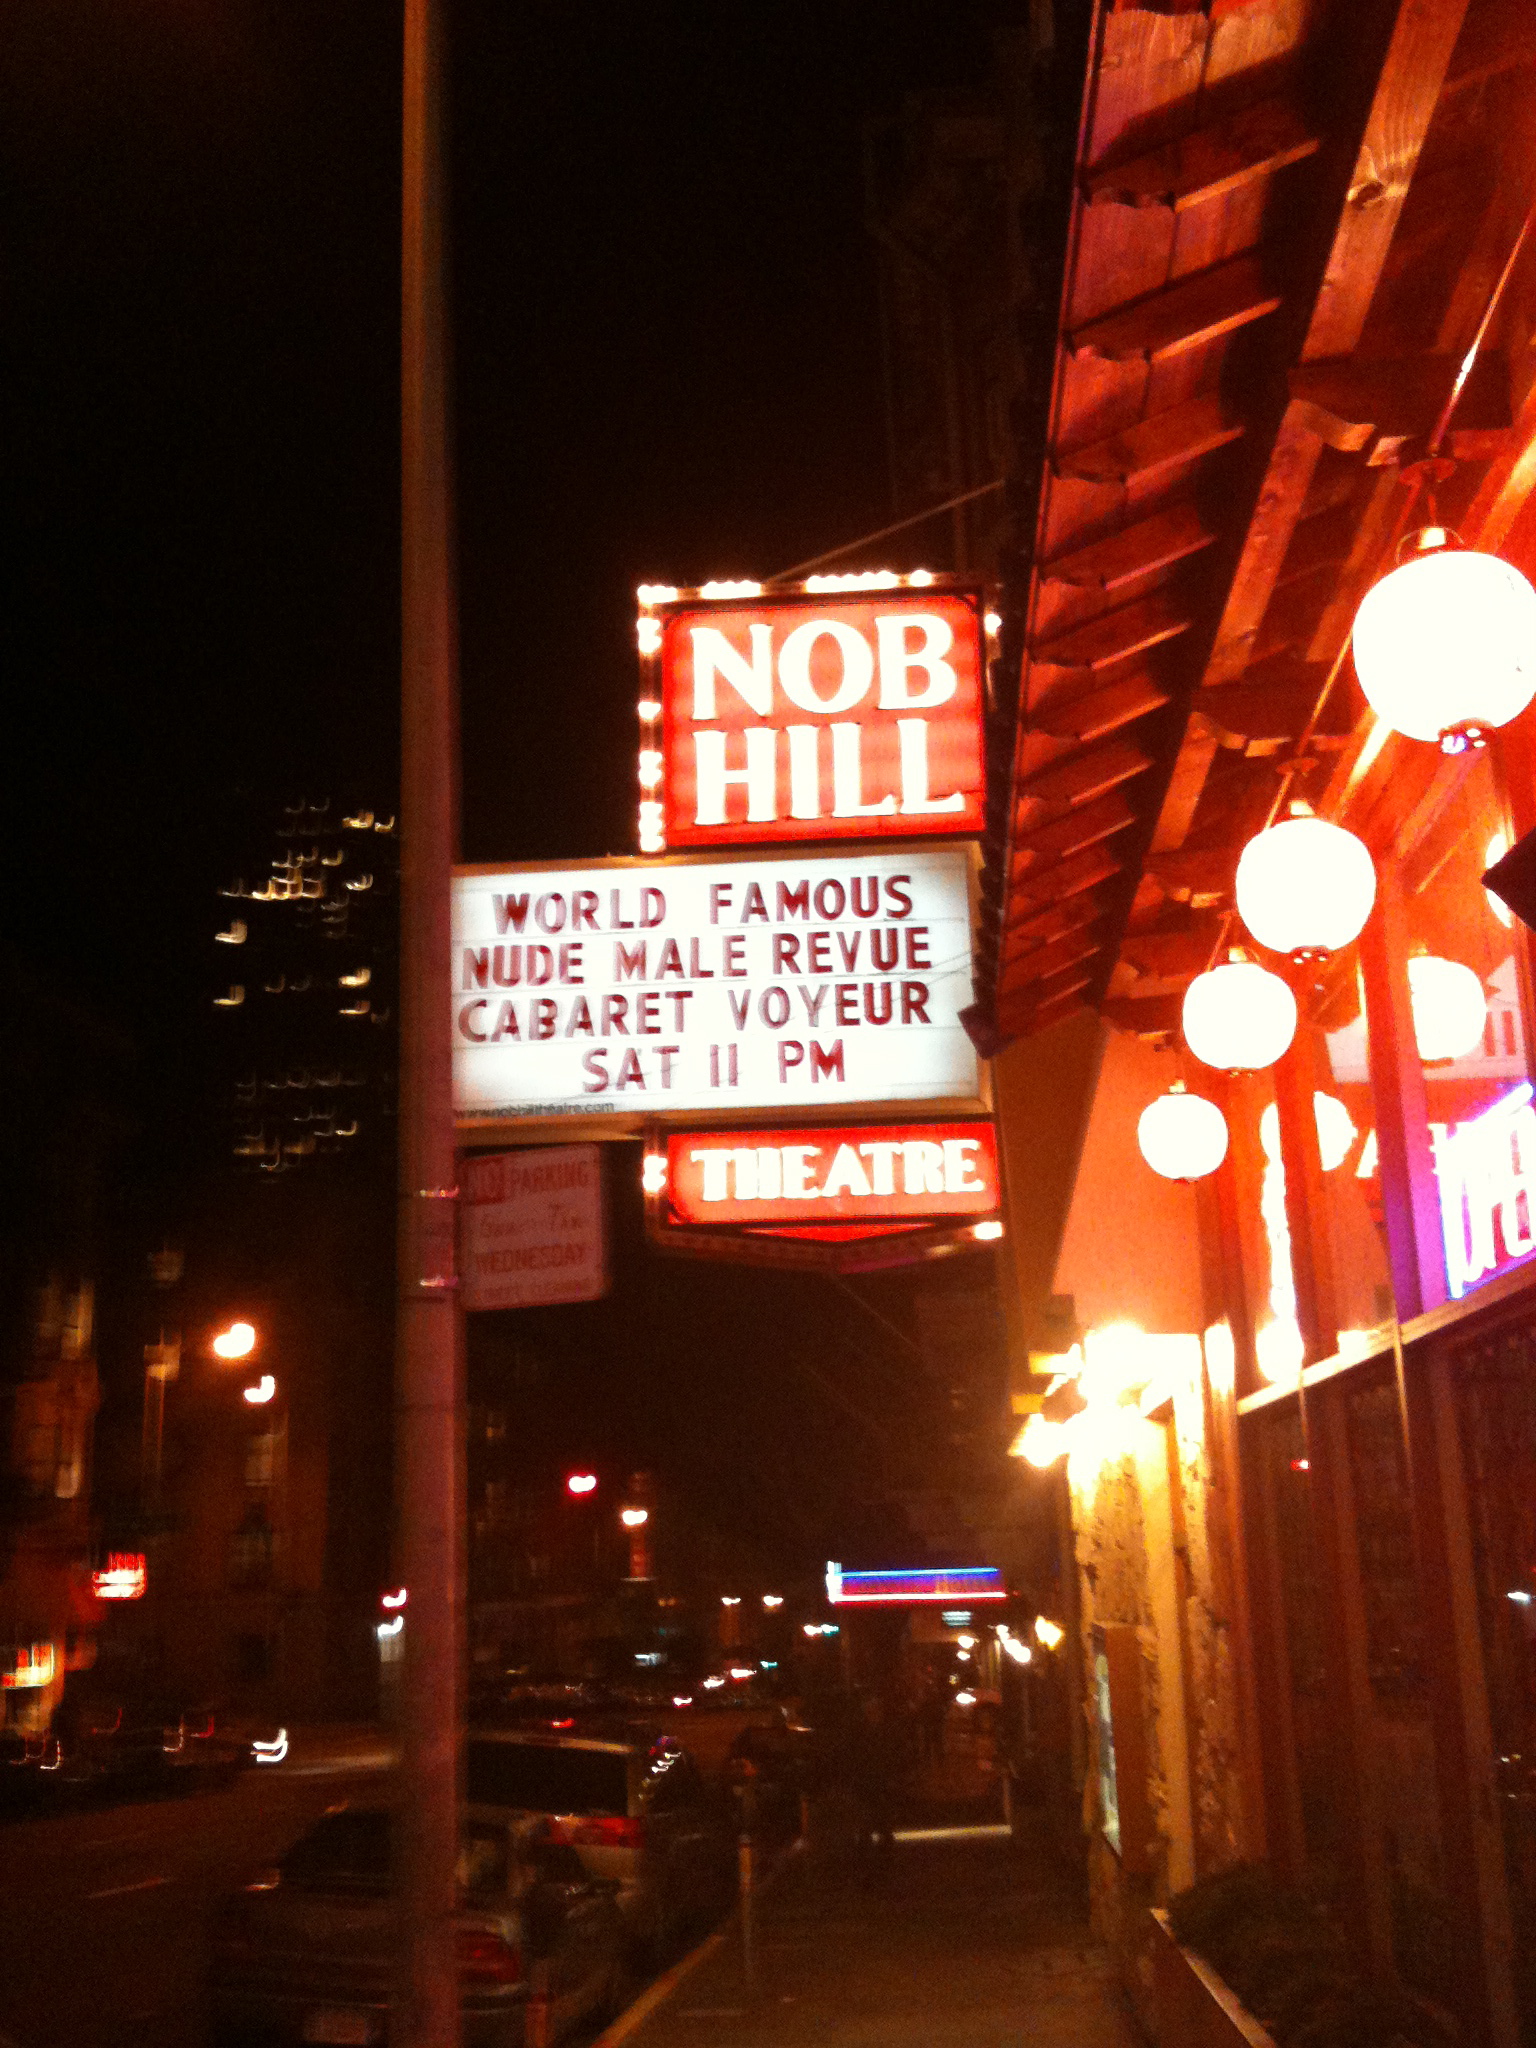 Nob Hill Adult Theatre reviews, photos - CLOSED - Nob Hill - San Francisco 